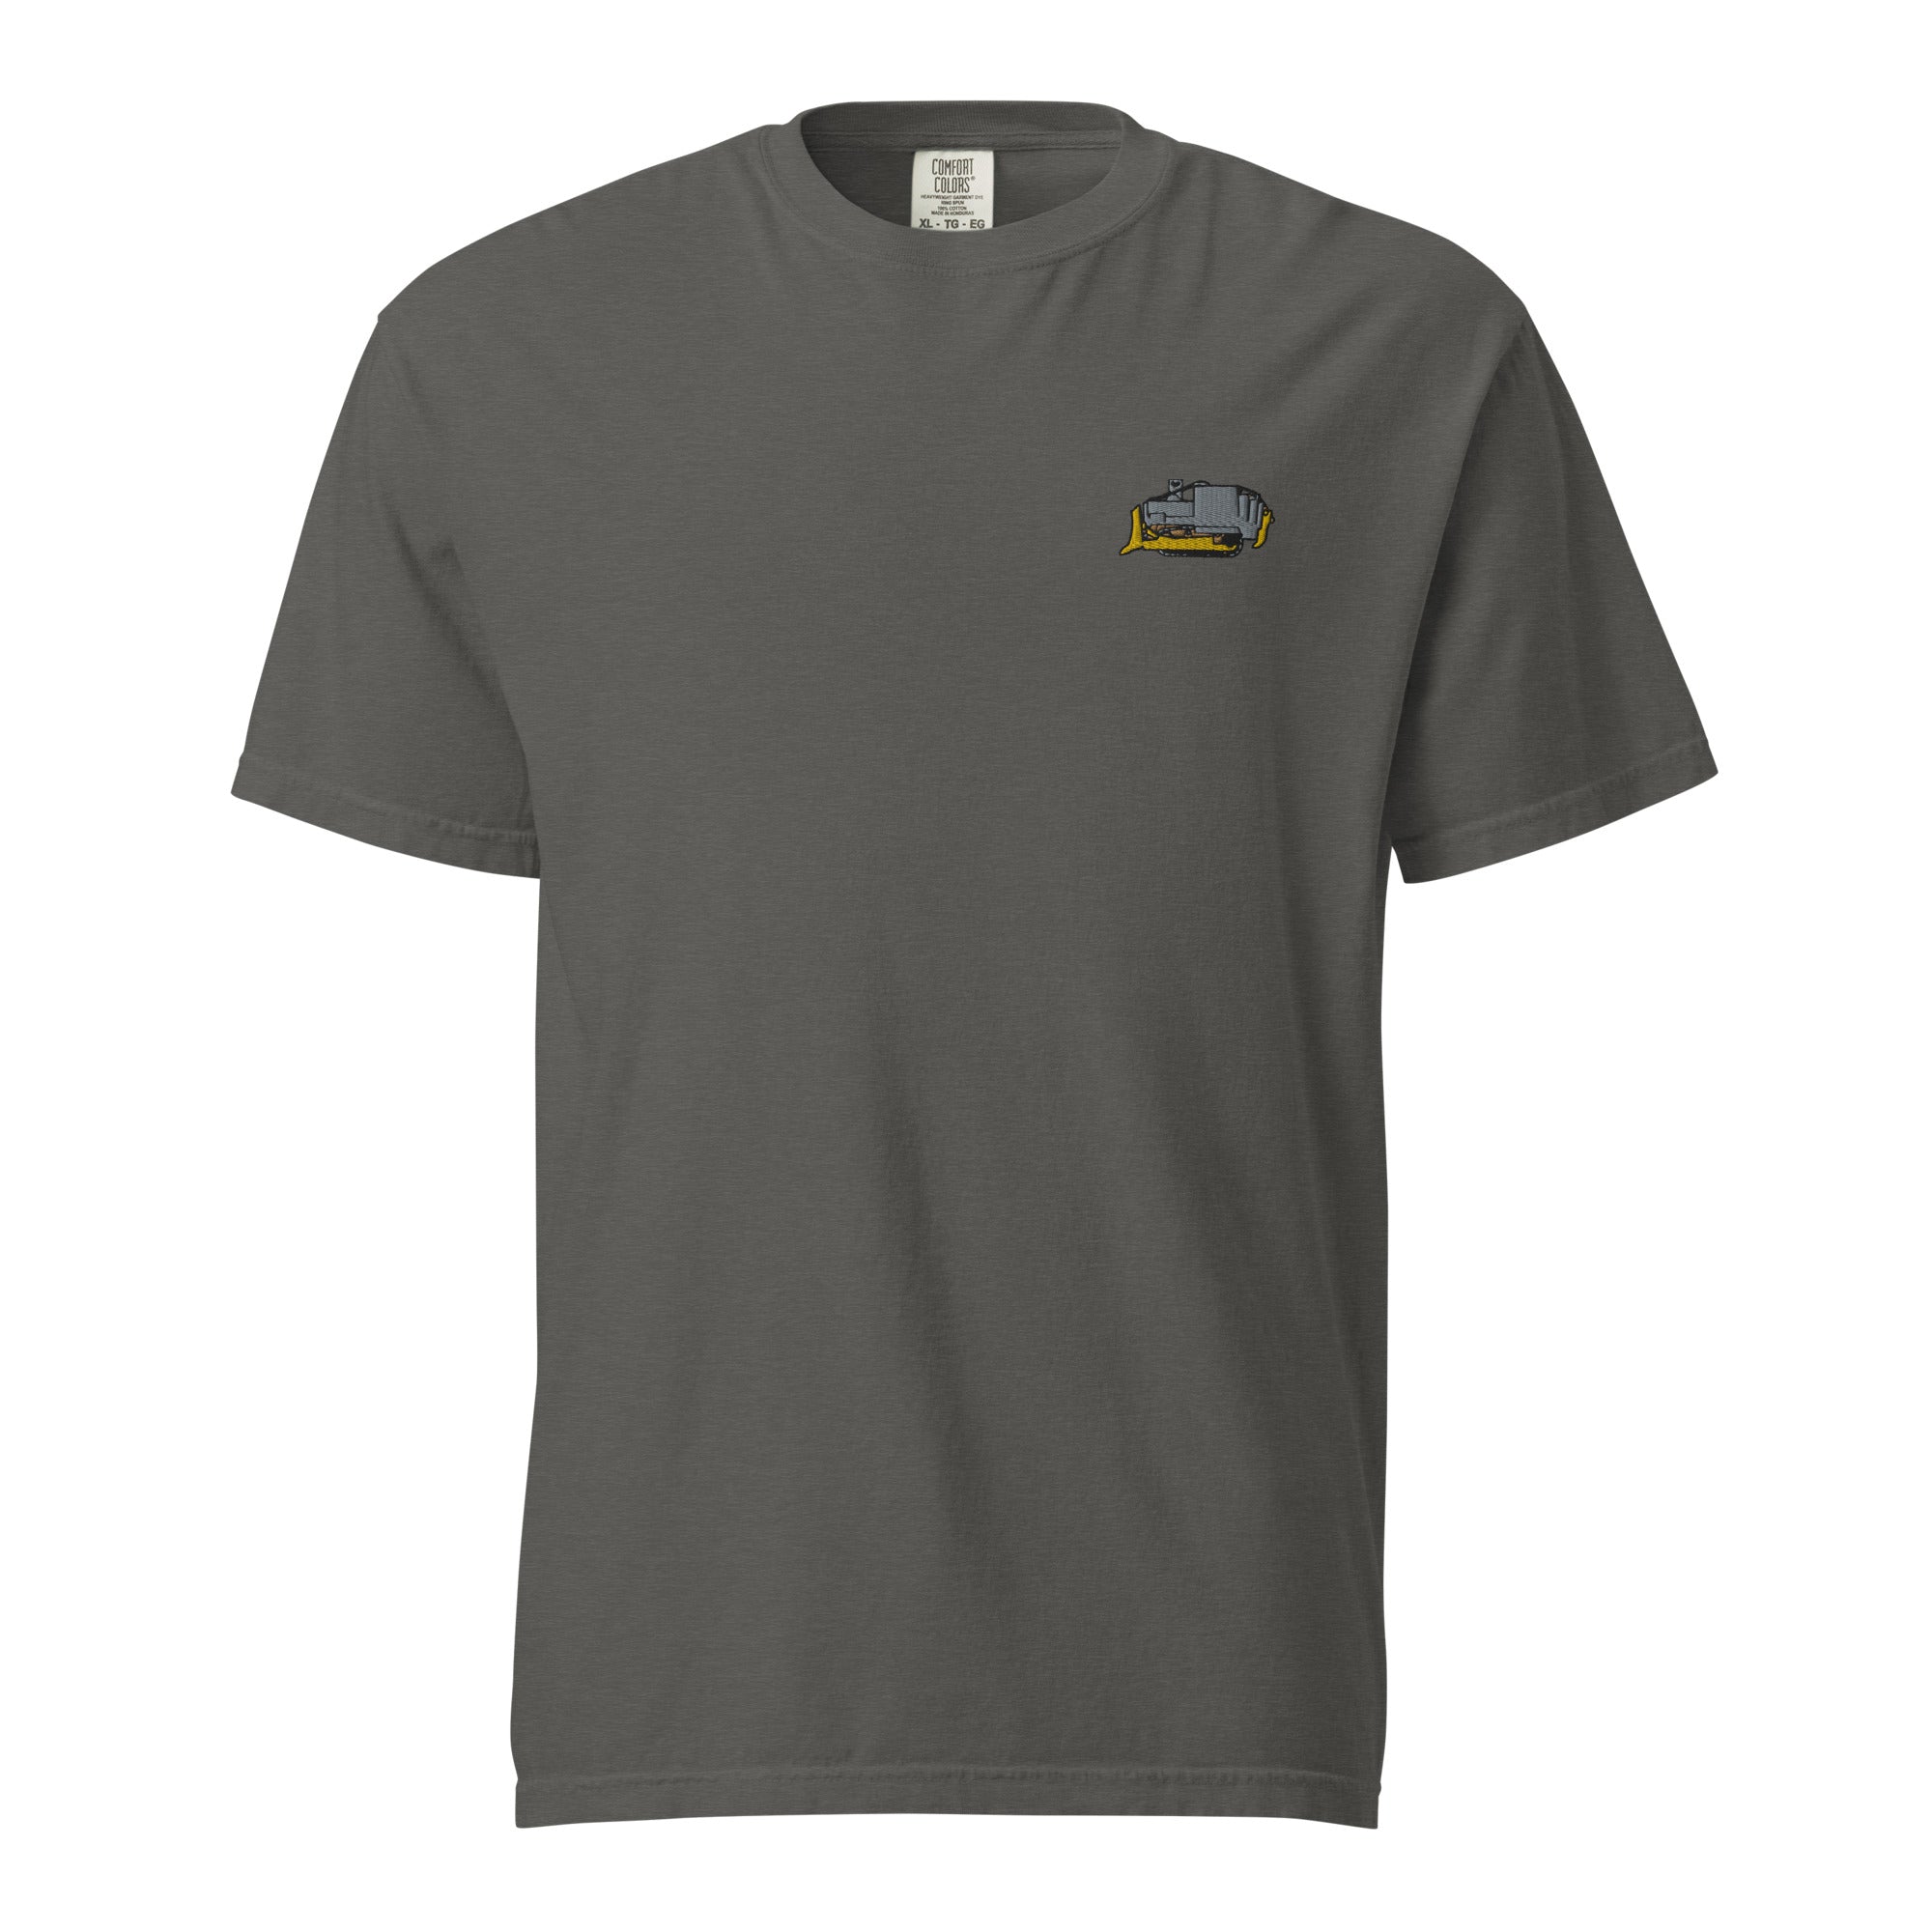 Heemeyer's Mountain View Muffler Heavyweight T-shirt